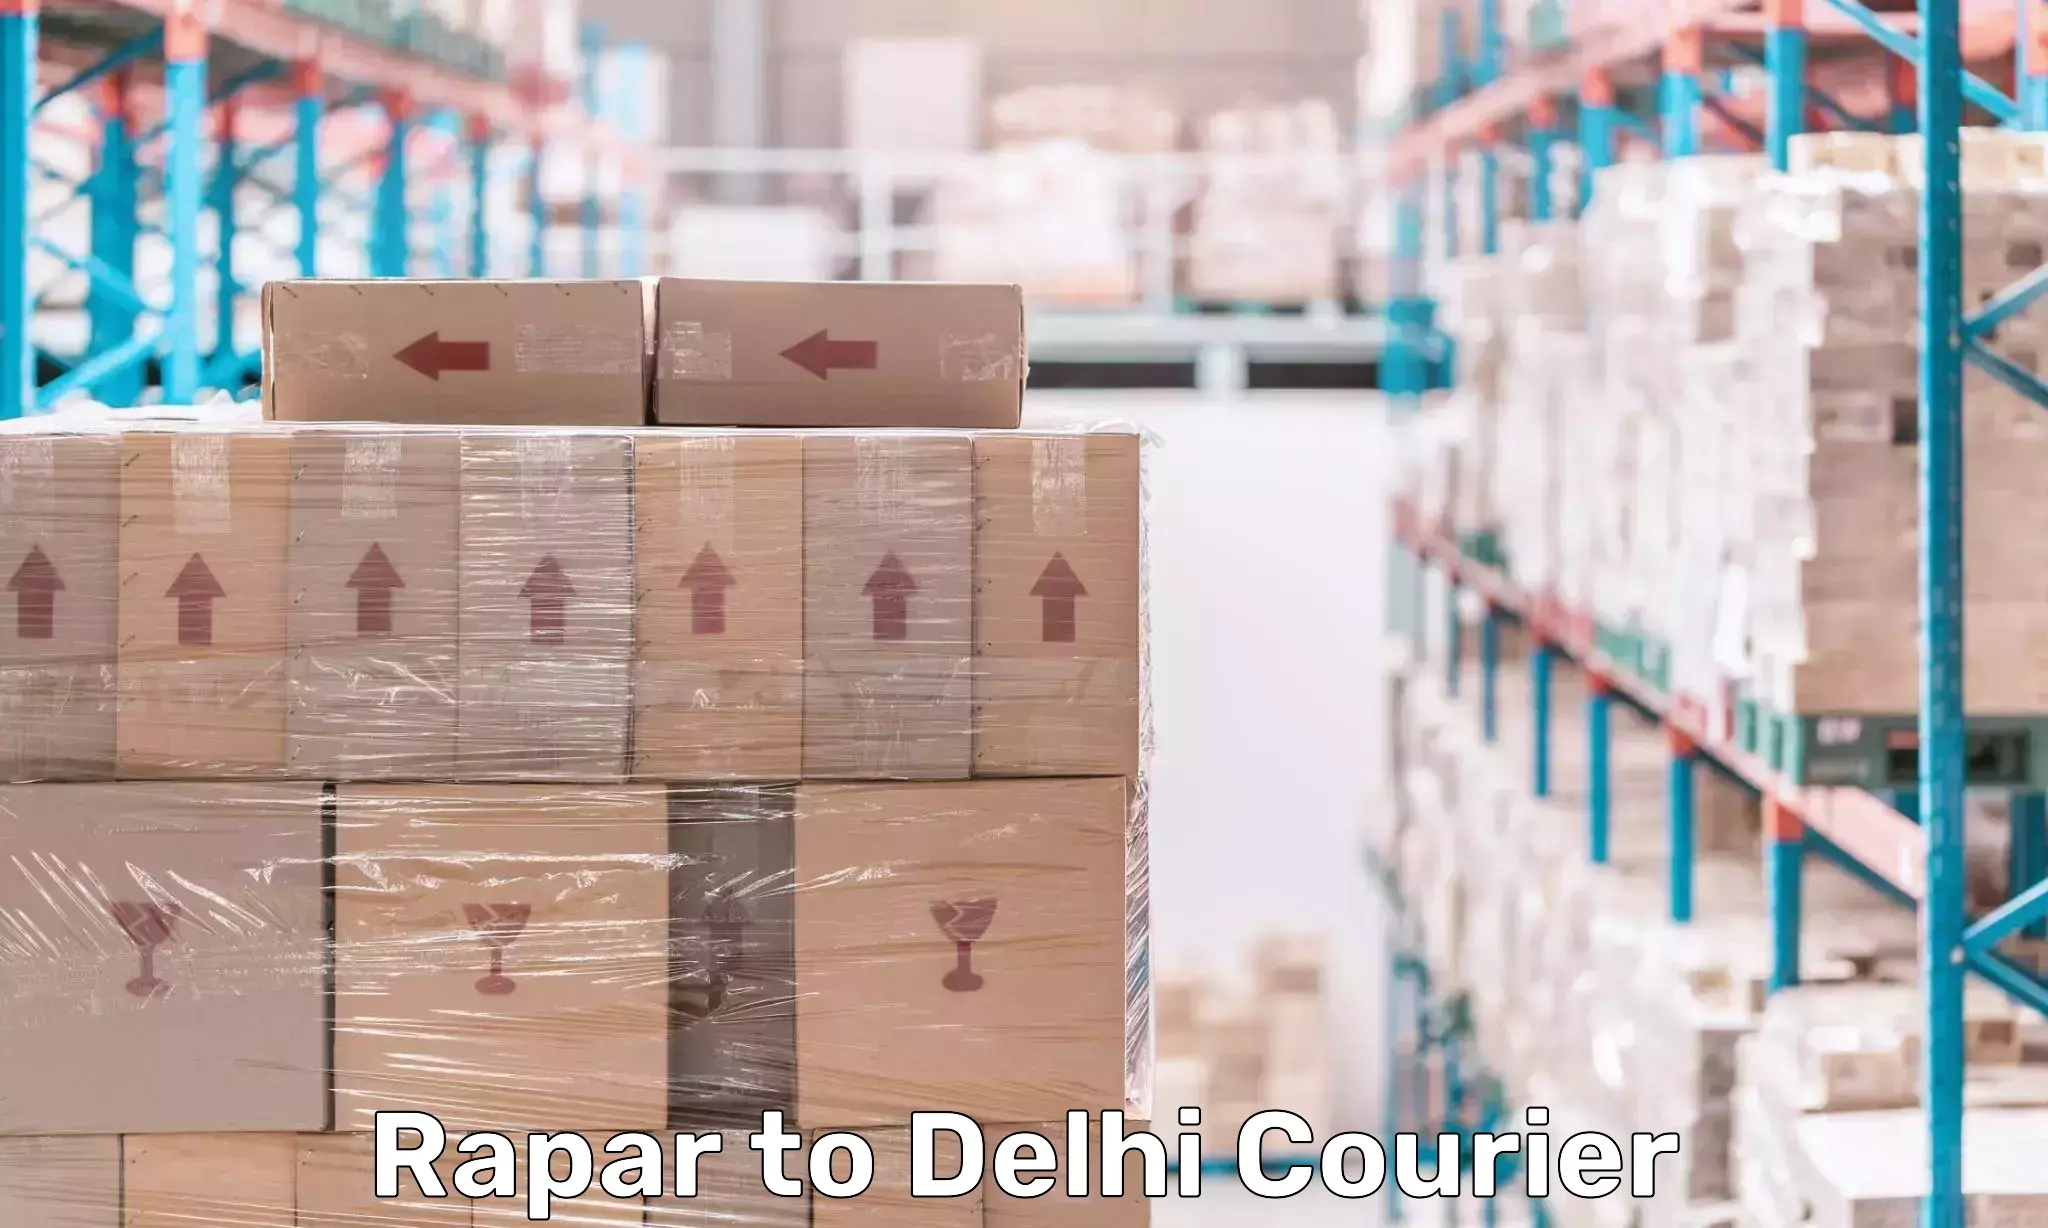 Professional parcel services Rapar to Delhi